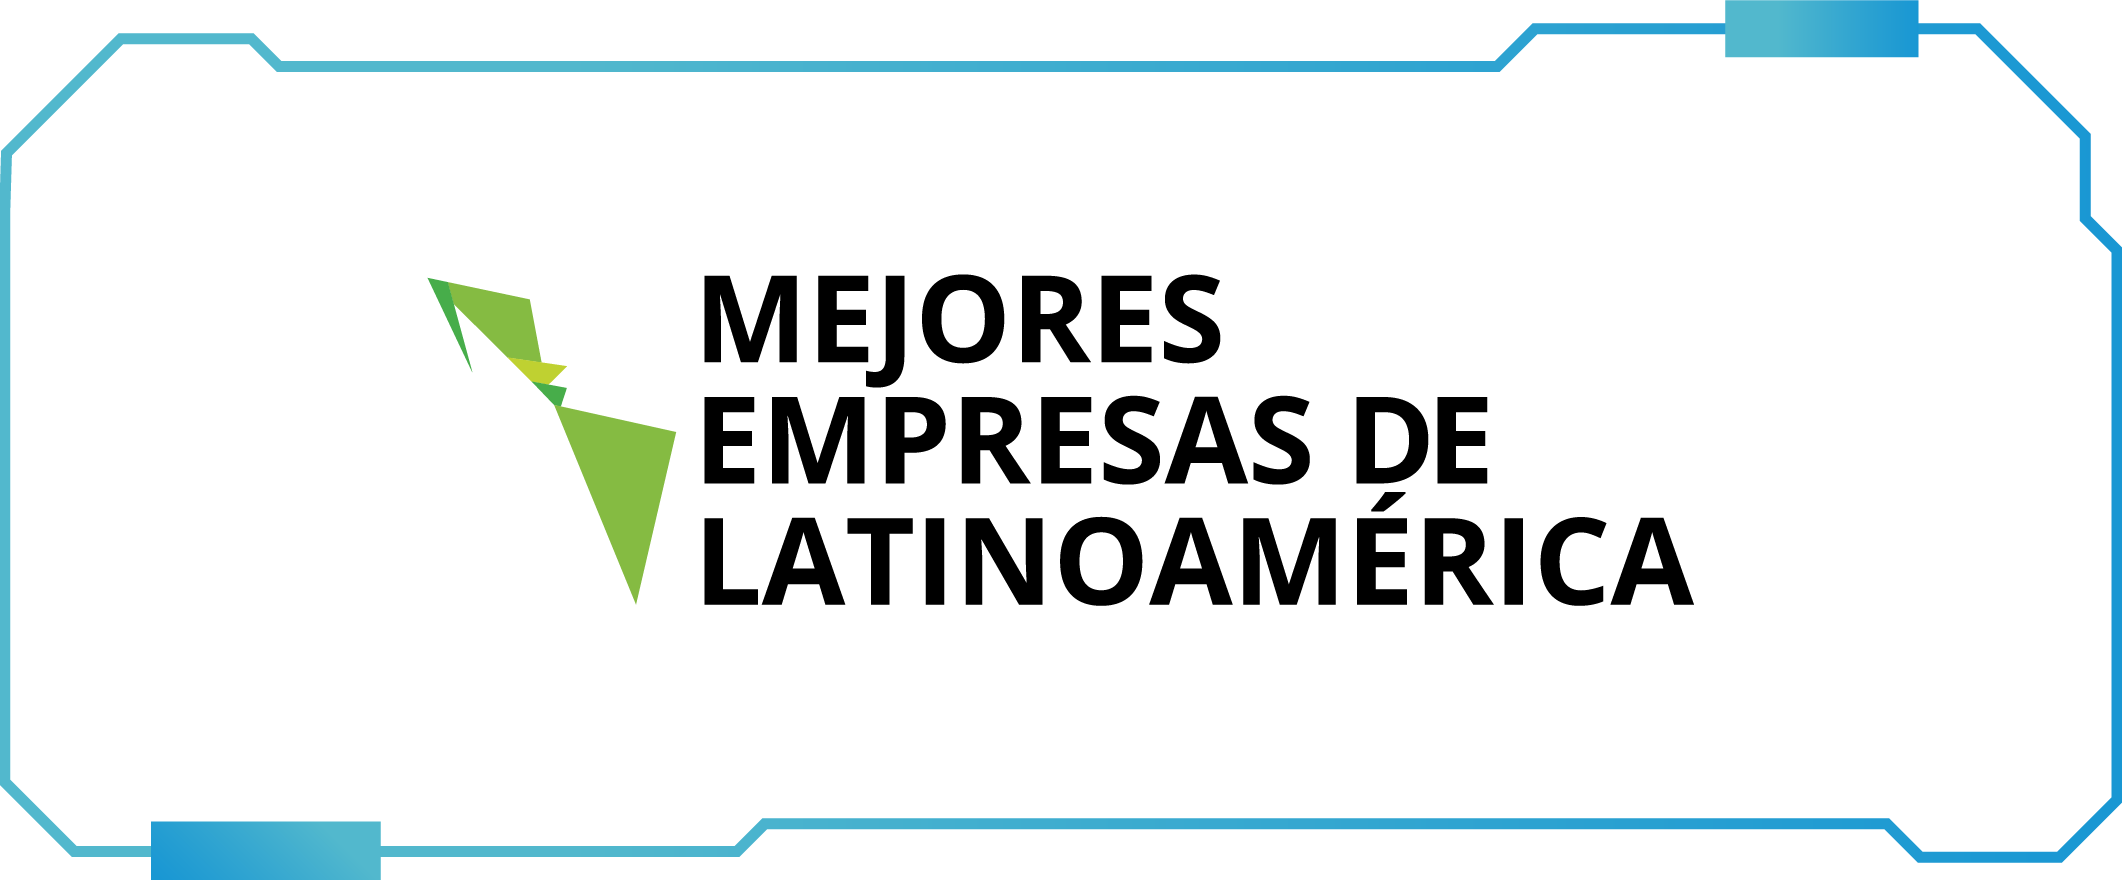 Mejores empresas de latinoamérica